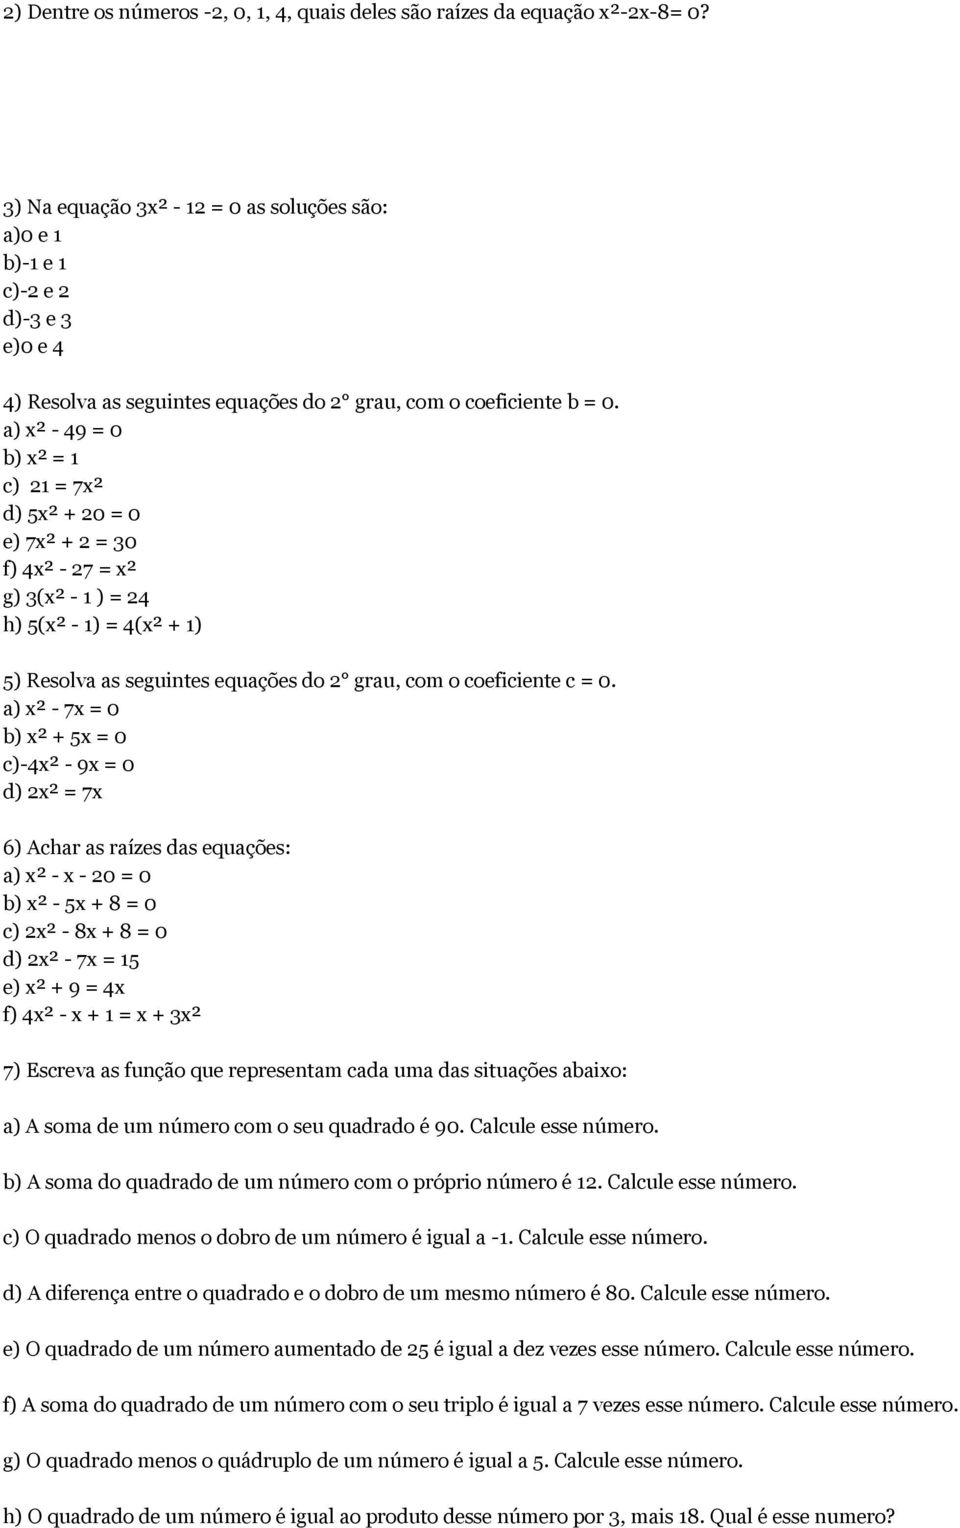 a) x² - 49 = 0 b) x² = 1 c) 21 = 7x² d) 5x² + 20 = 0 e) 7x² + 2 = 30 f) 4x² - 27 = x² g) 3(x² - 1 ) = 24 h) 5(x² - 1) = 4(x² + 1) 5) Resolva as seguintes equações do 2 grau, com o coeficiente c = 0.